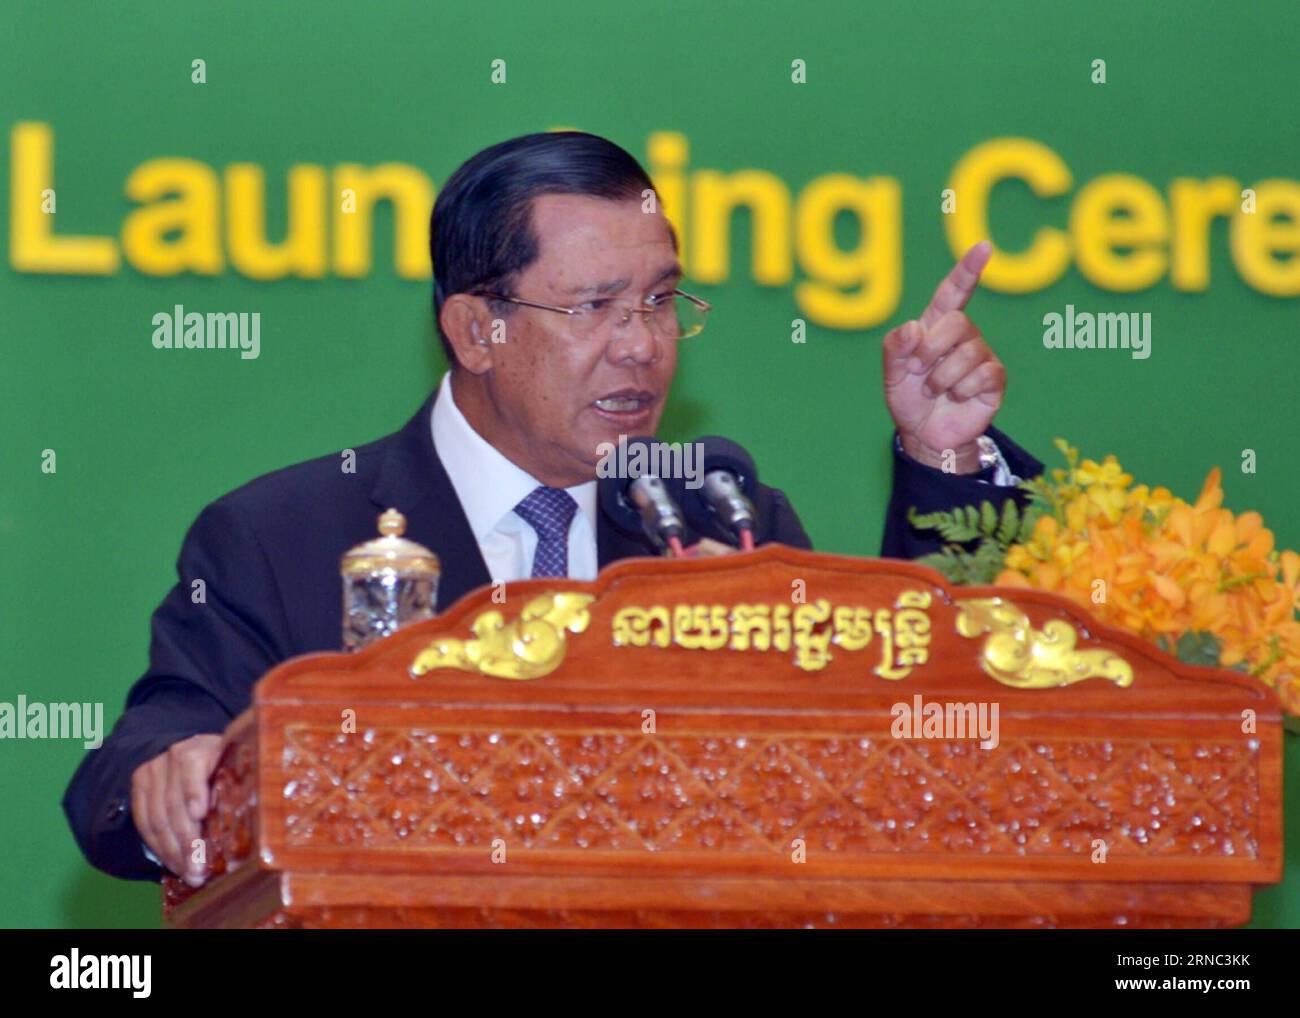 (160321) -- PHNOM PENH, 21. März 2016 -- kambodschanischer Premierminister Hun Sen spricht während der Eröffnungszeremonie eines Reformprogramms für das öffentliche Finanzmanagement in Phnom Penh, Kambodscha, 21. März 2016. Hun Sen verteidigte am Montag seine bevorstehende Kabinettsumbildung und sagte, dass seine neuen Kabinettsmitglieder zwar die gleichen Gesichter haben, aber härter daran arbeiten werden, ein hohes Wirtschaftswachstum und die Armutsbekämpfung aufrechtzuerhalten. ) KAMBODSCHA-PHNOM PENH-POLITIK Sovannara PUBLICATIONxNOTxINxCHN Phnom PENH 21. März 2016 kambodschanische Premierminister HUN Sen spricht während der Eröffnungszeremonie eines öffentlichen Finanzmanags Stockfoto